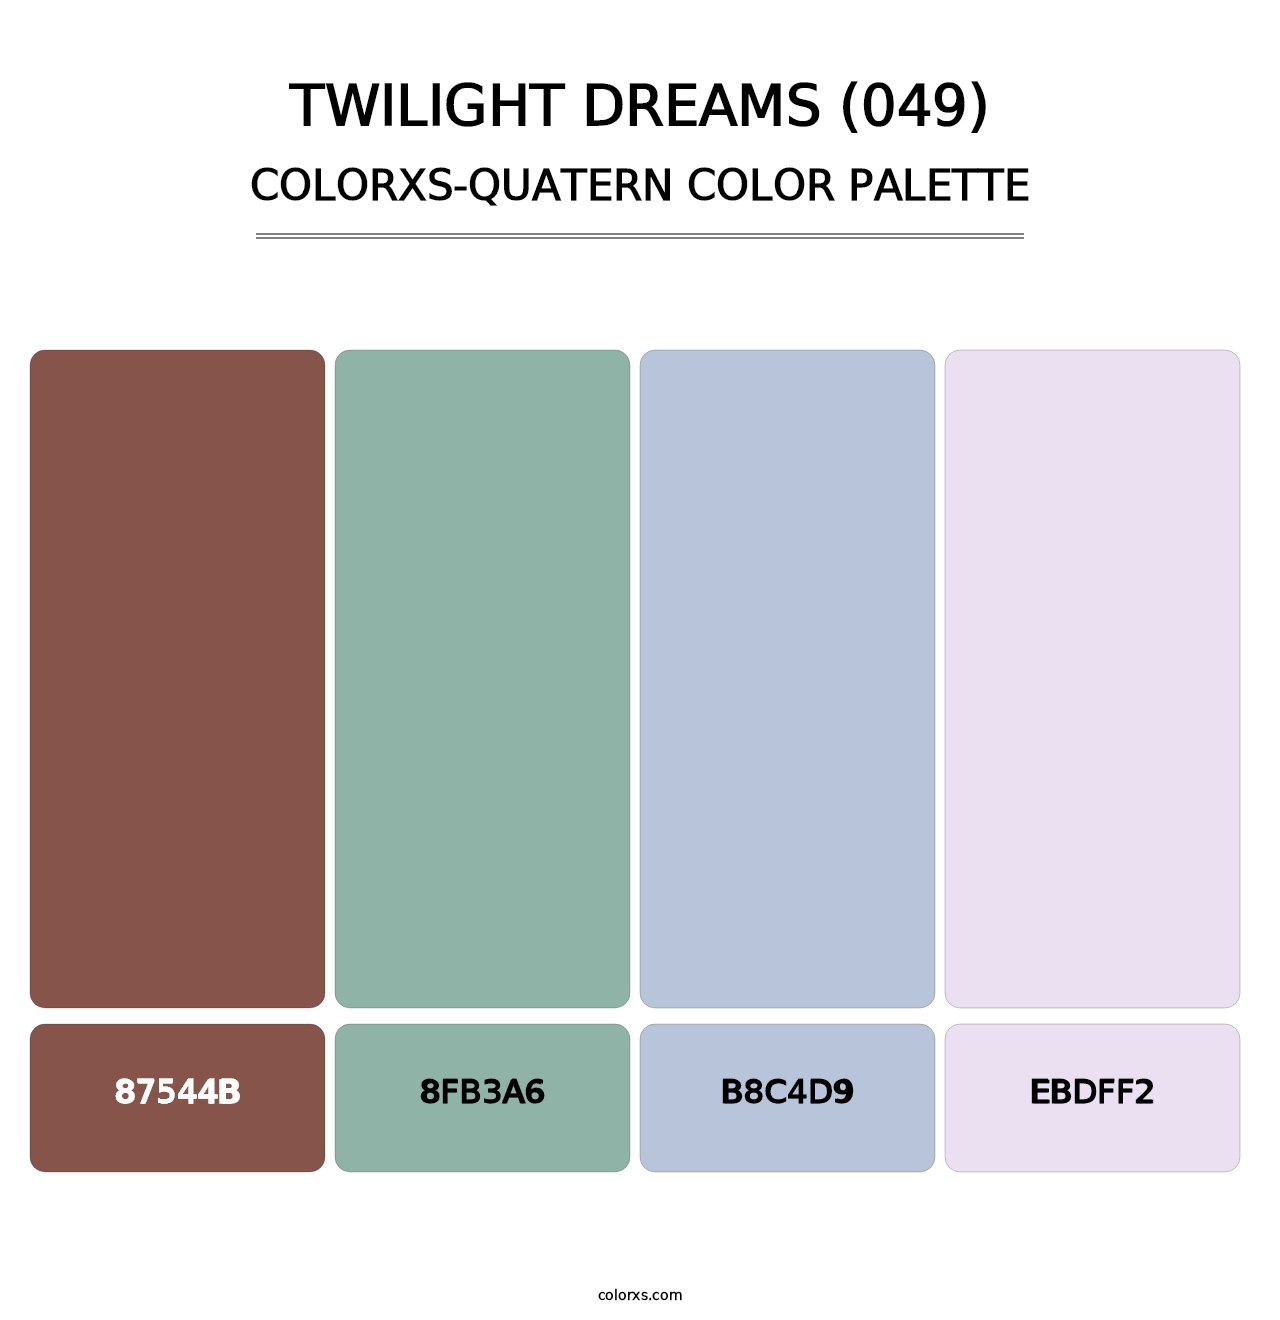 Twilight Dreams (049) - Colorxs Quatern Palette